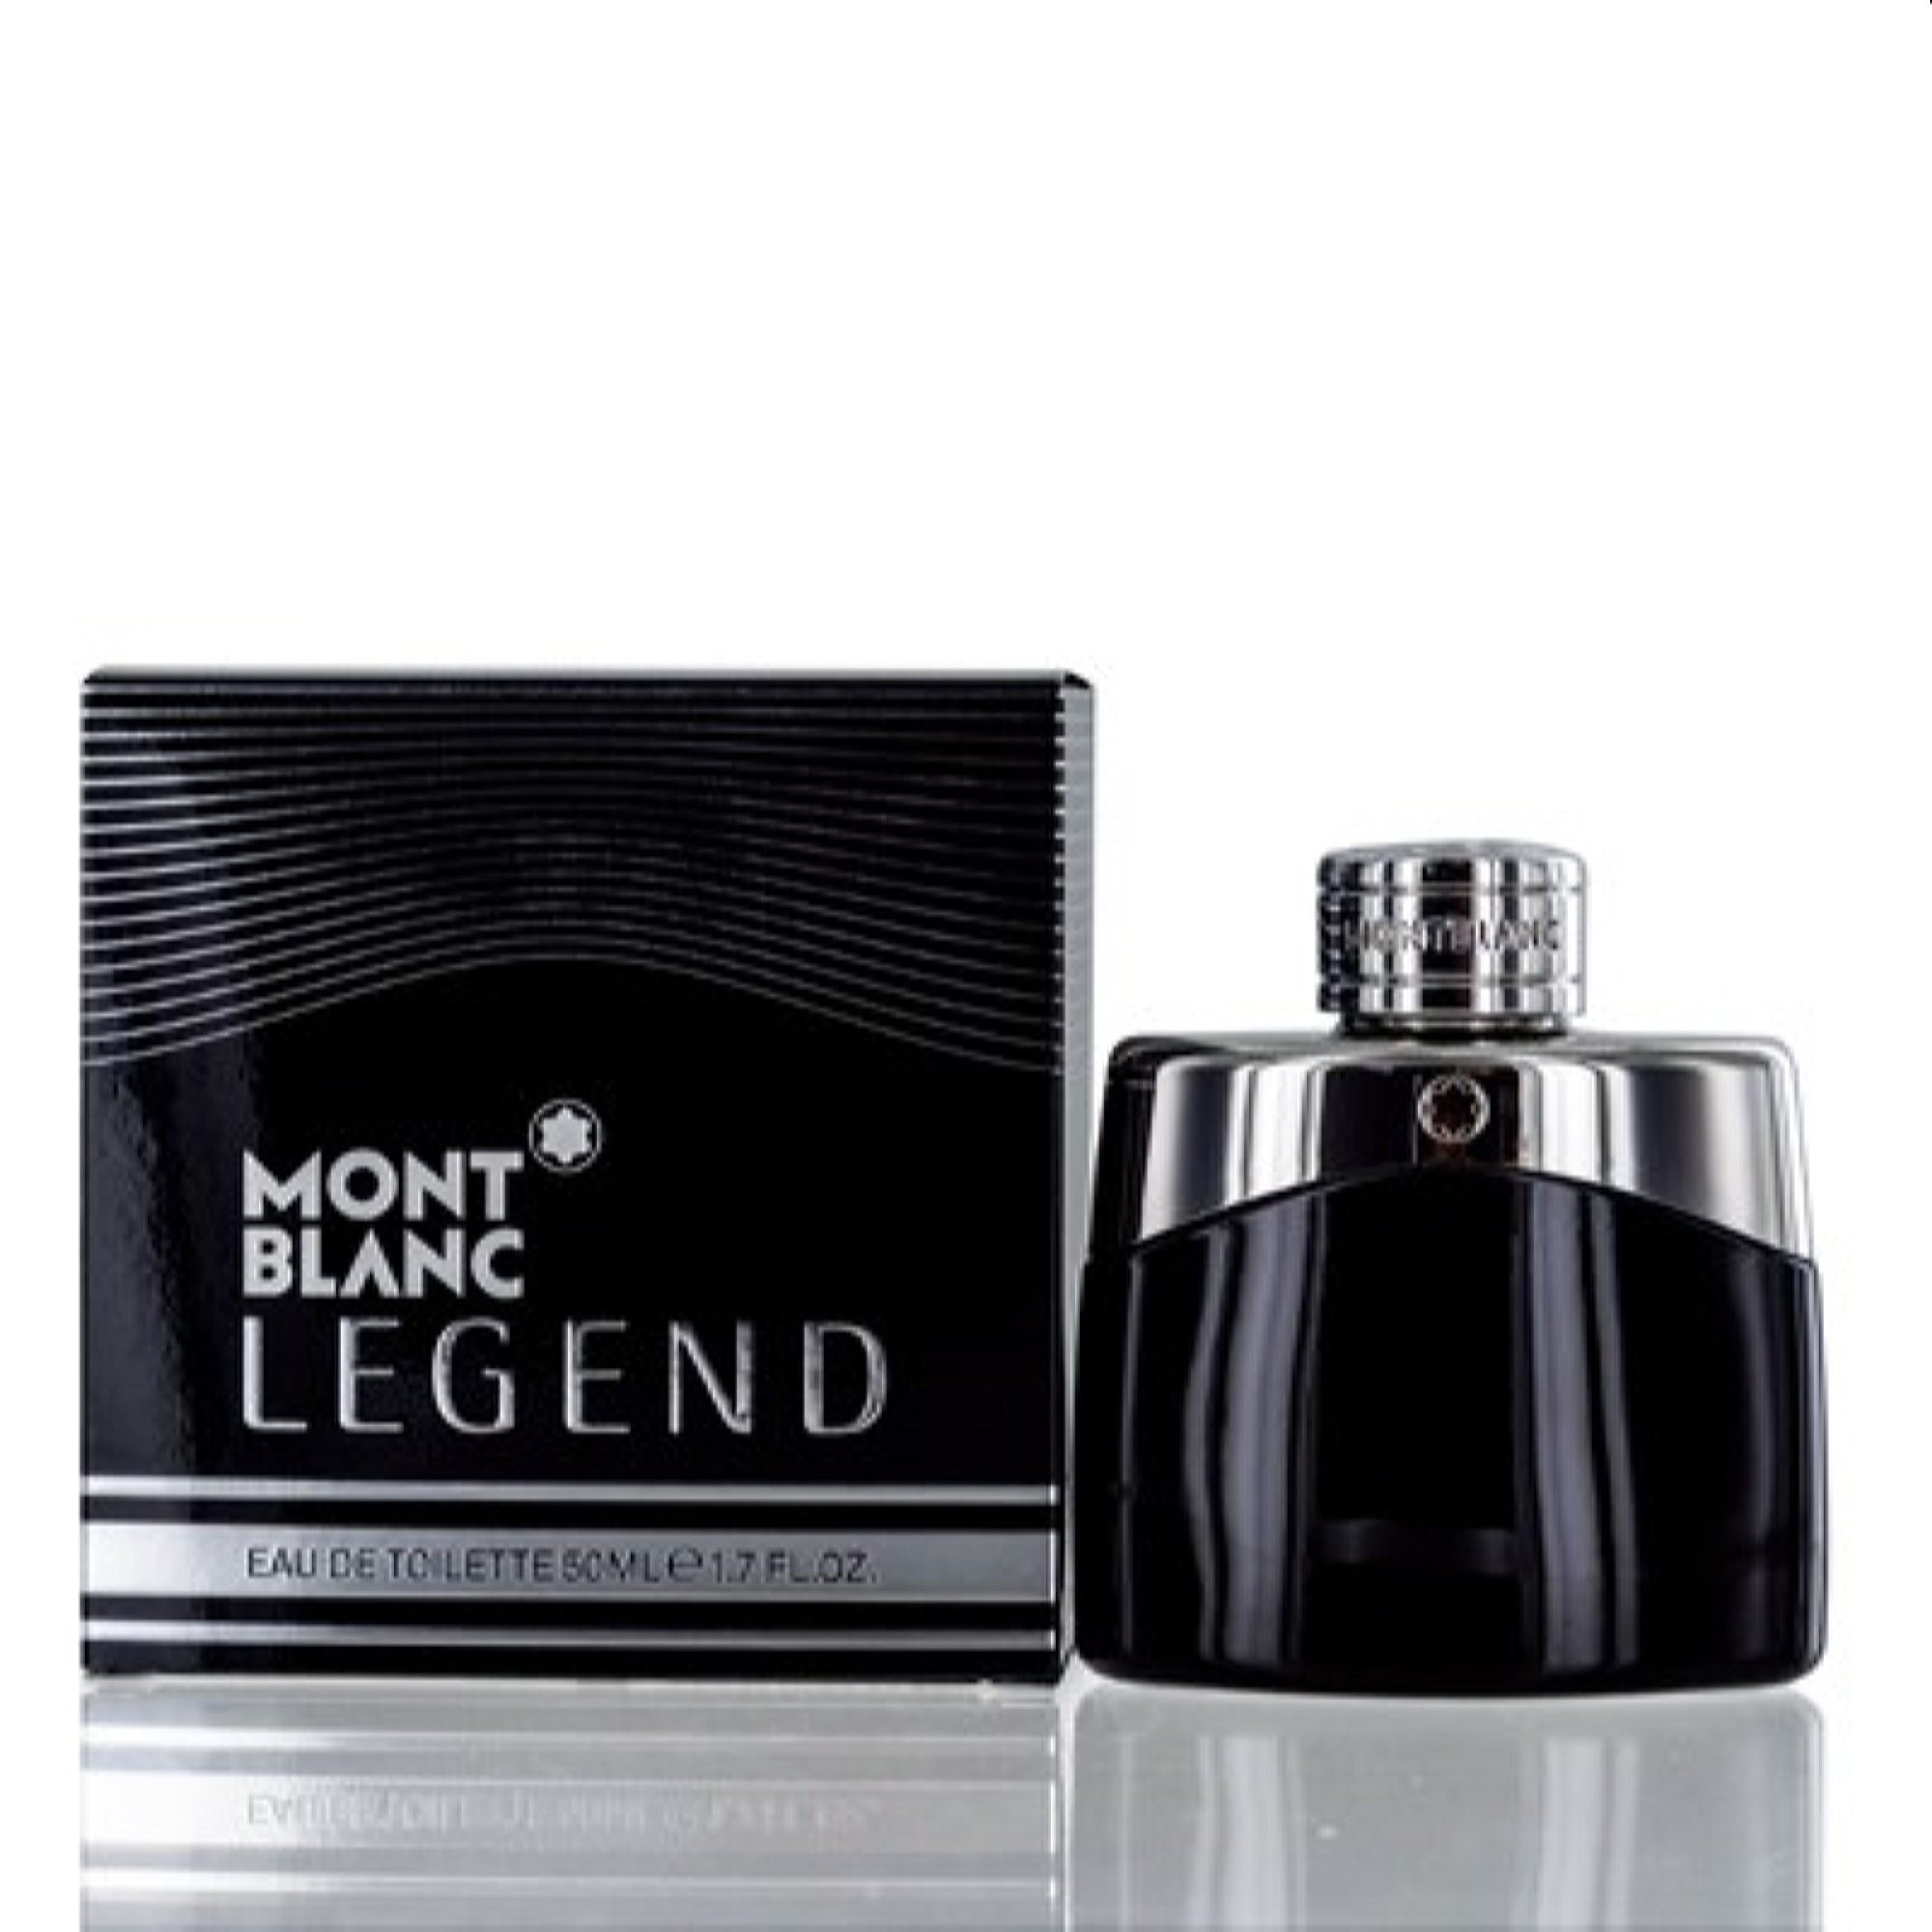  MONTBLANC Legend Spirit Cologne For Man Eau De Toilette Spray  6.7 Fl Oz : Beauty & Personal Care